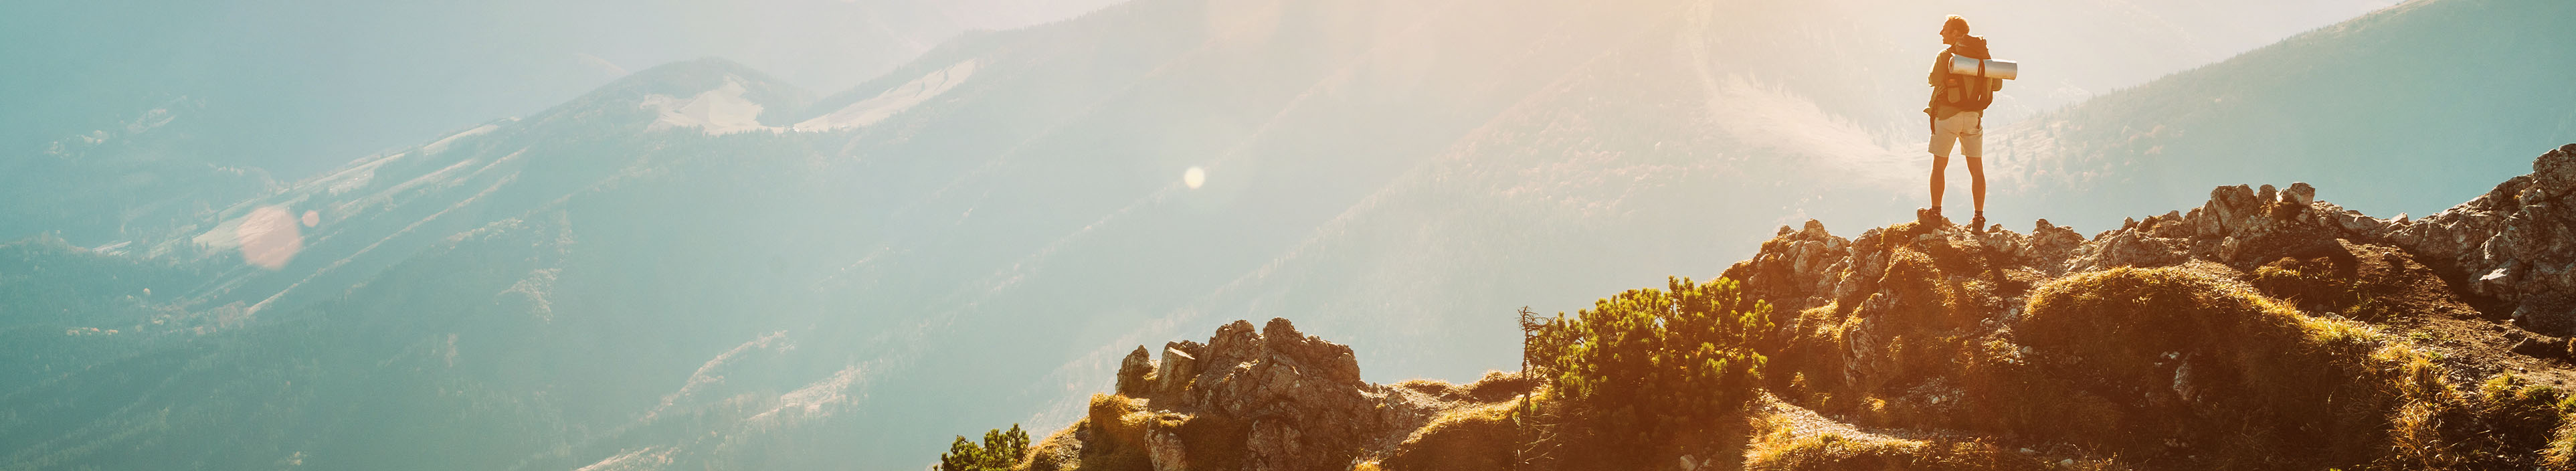 Bergwanderer mit Rucksack, auf dem Berggipfel mit wunderschönem Panorama